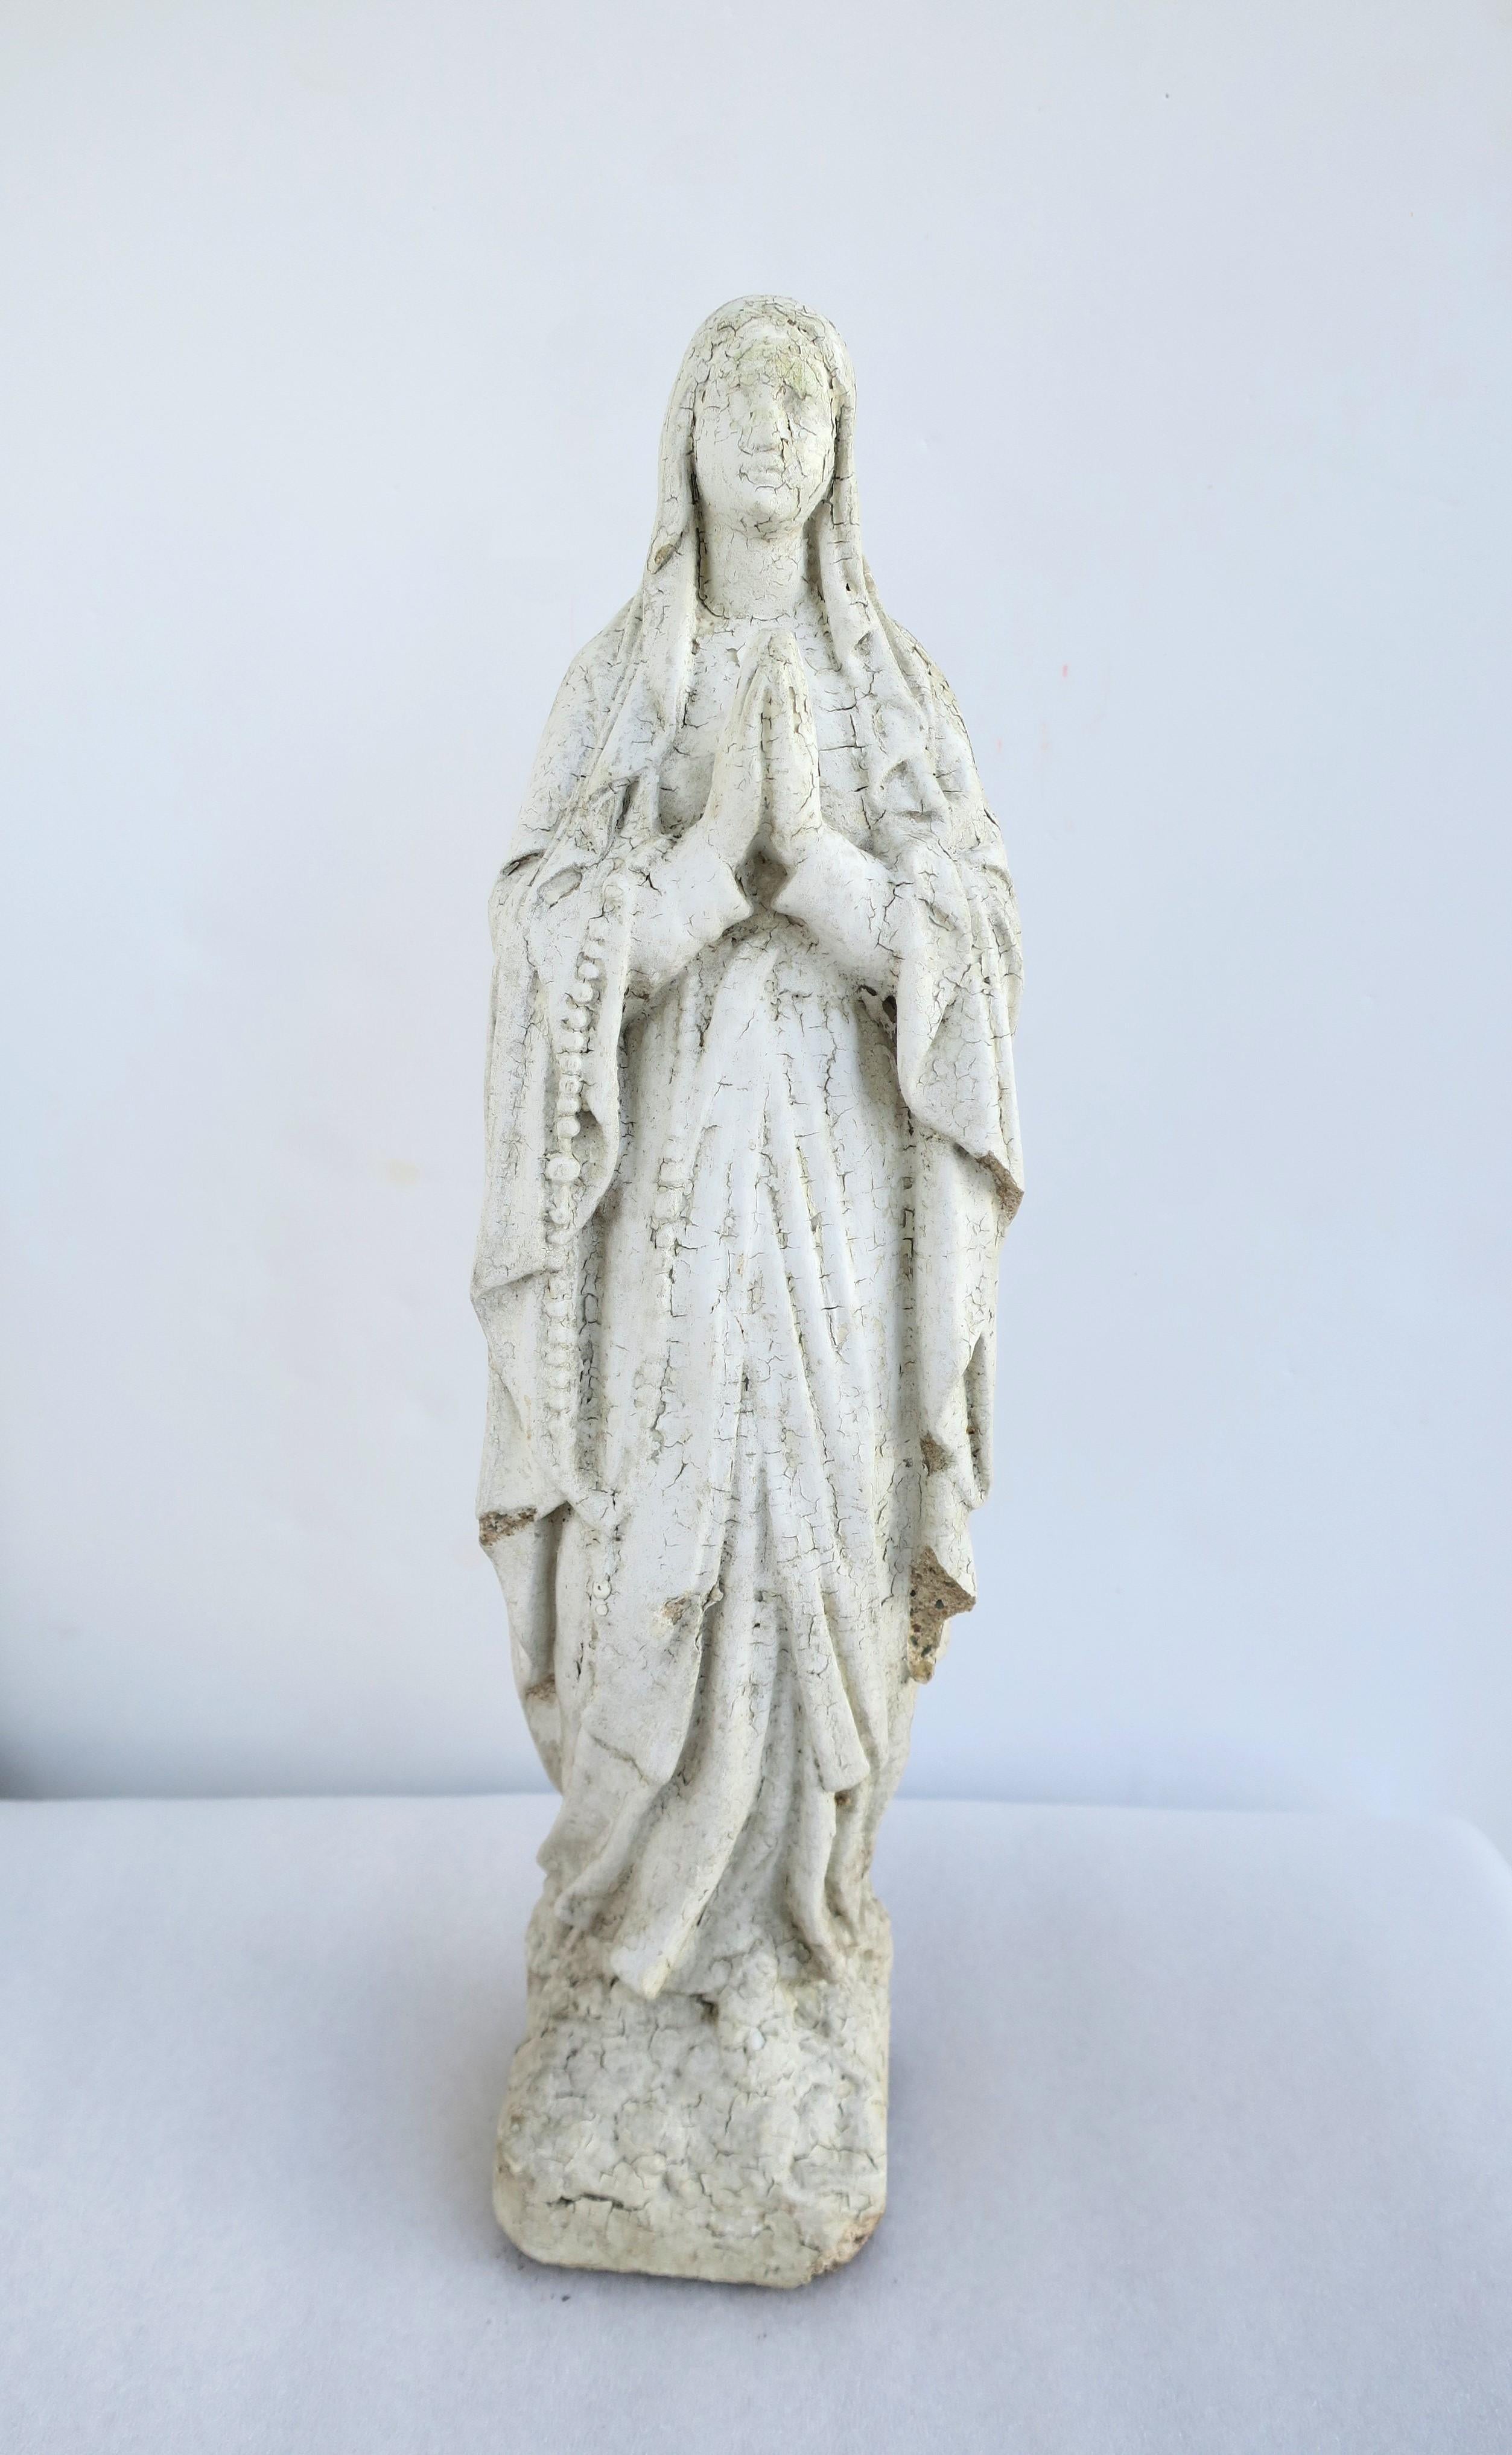 Vierge Marie, Madone ou Sainte Mère, statue de jardin en ciment peint en blanc, vers le début ou le milieu du 20e siècle. La statue peut être utilisée à l'intérieur ou à l'extérieur. Dimensions : 3,63